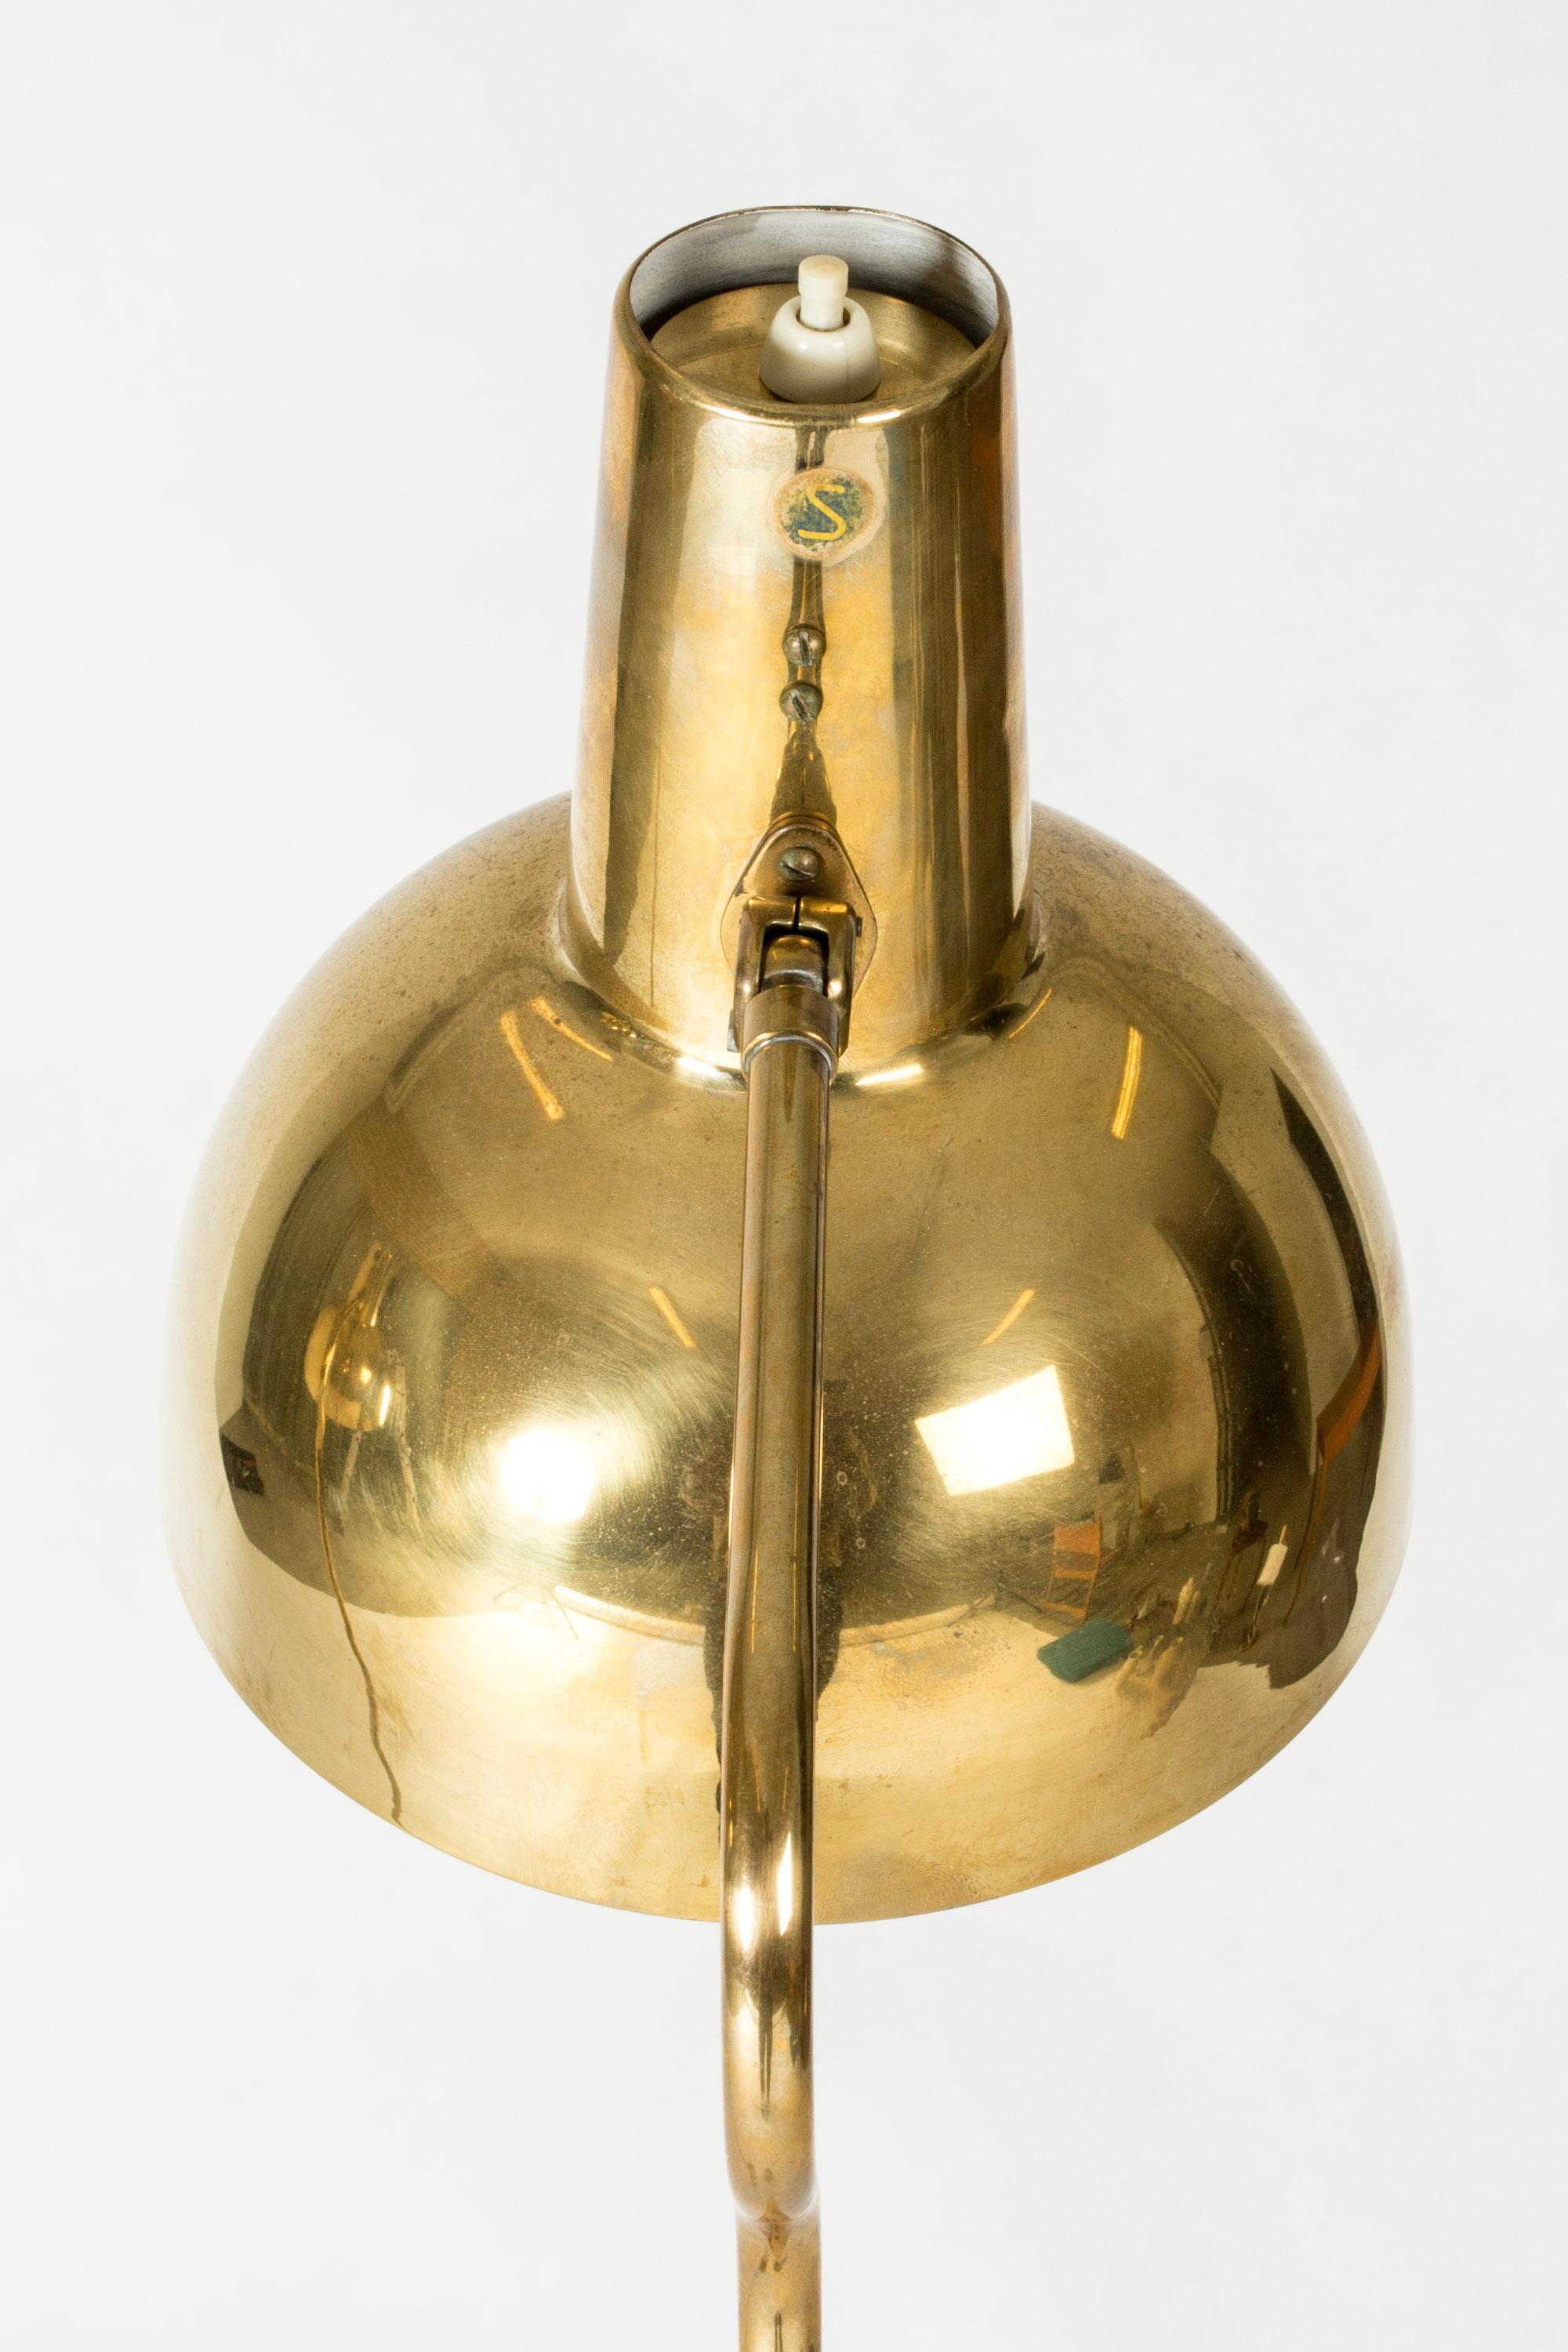 Vintage Scandinavian Modern Brass Floor Lamps, ASEA, Sweden, 1950s For Sale 4